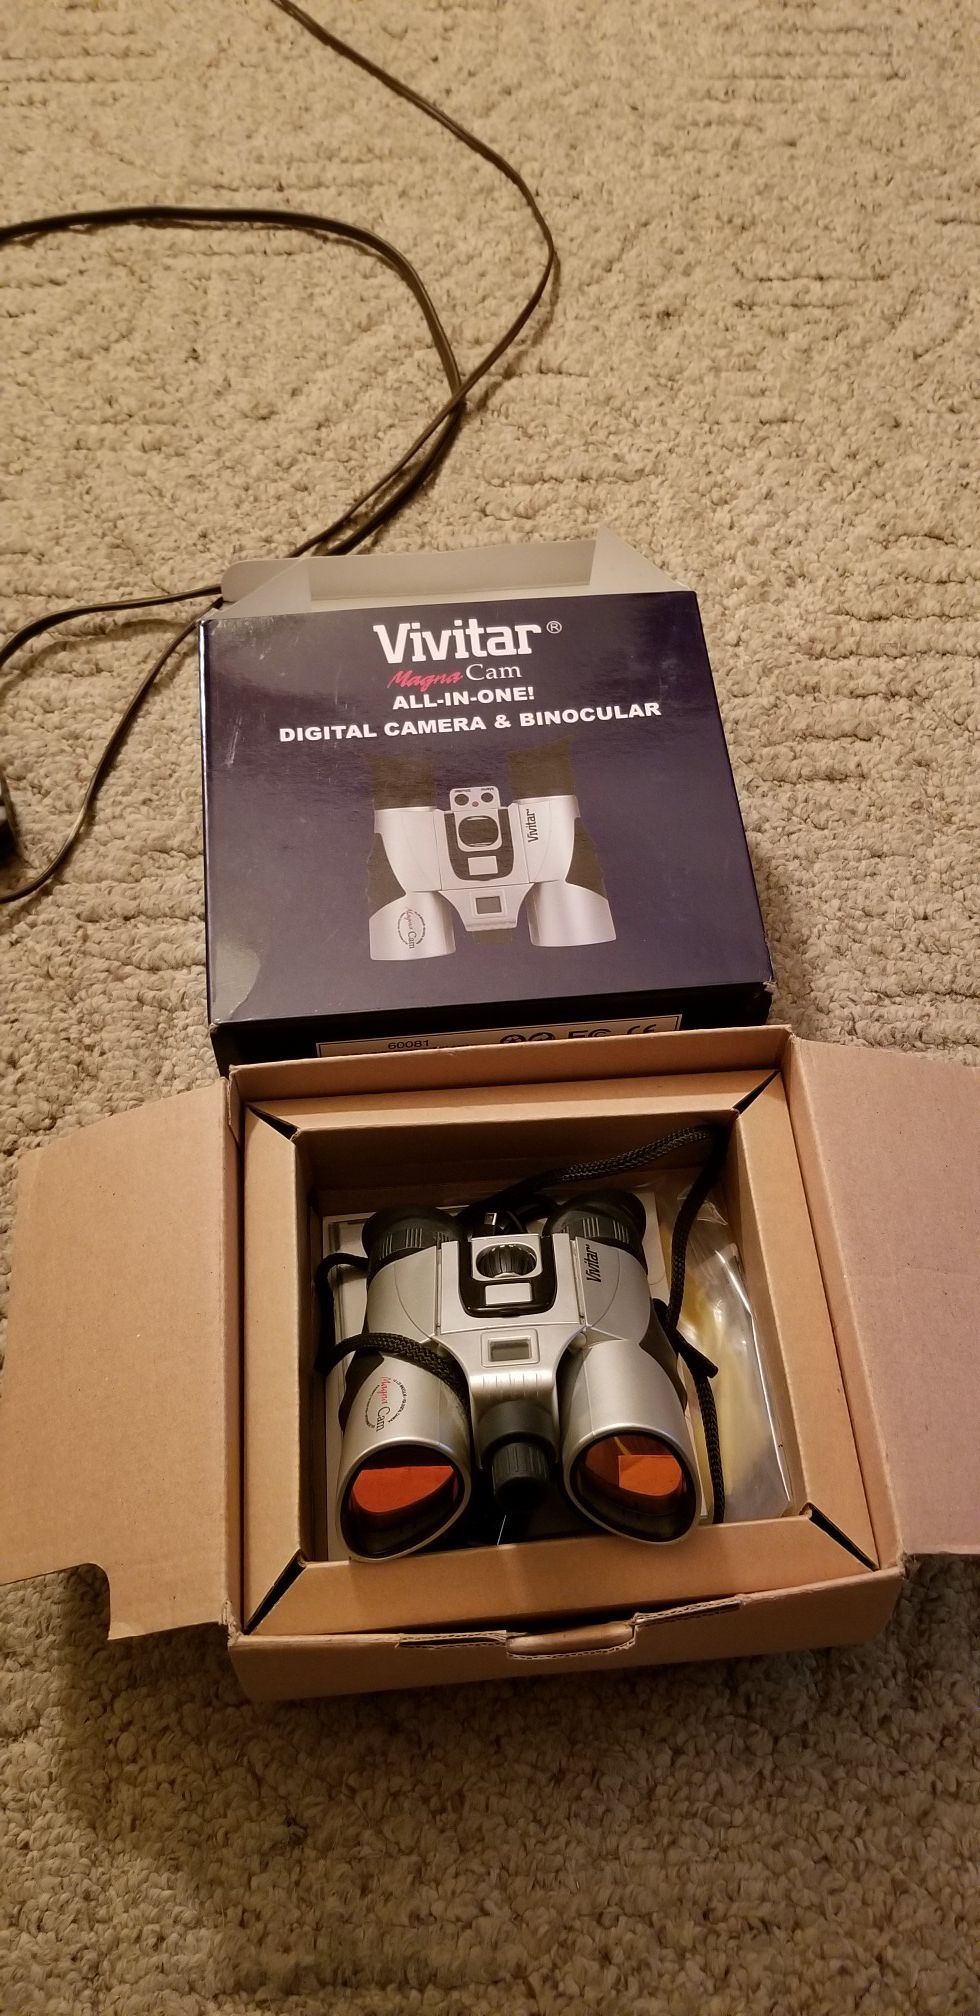 Vivitar digital camera and binoculars